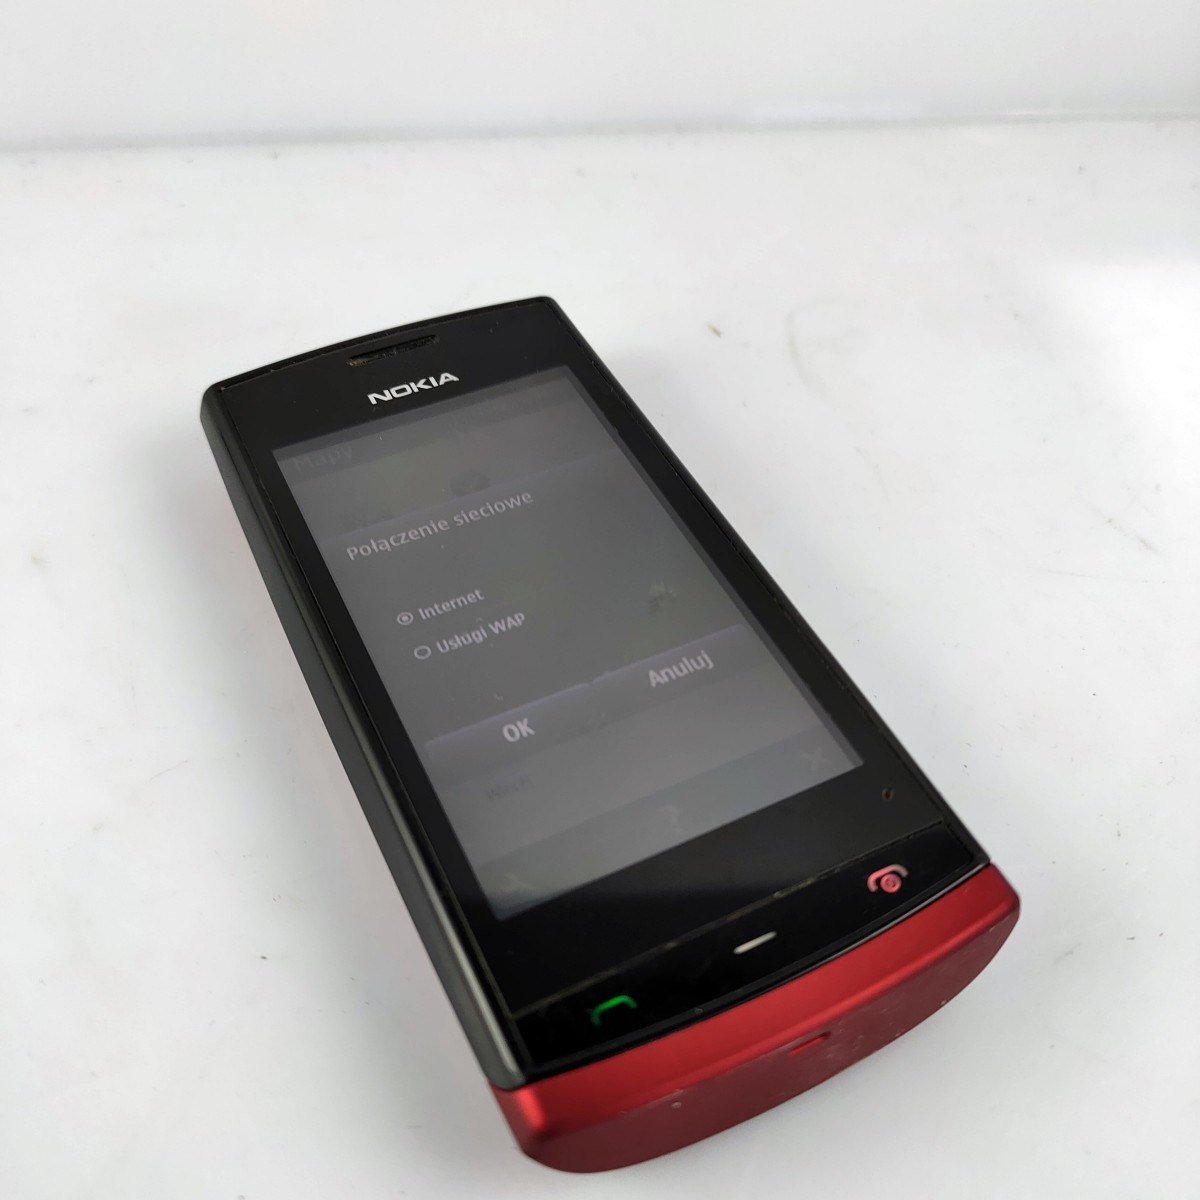 Telefon Nokia 500 Lombardgm Sprzedaz Skup Zlota I Elektroniki